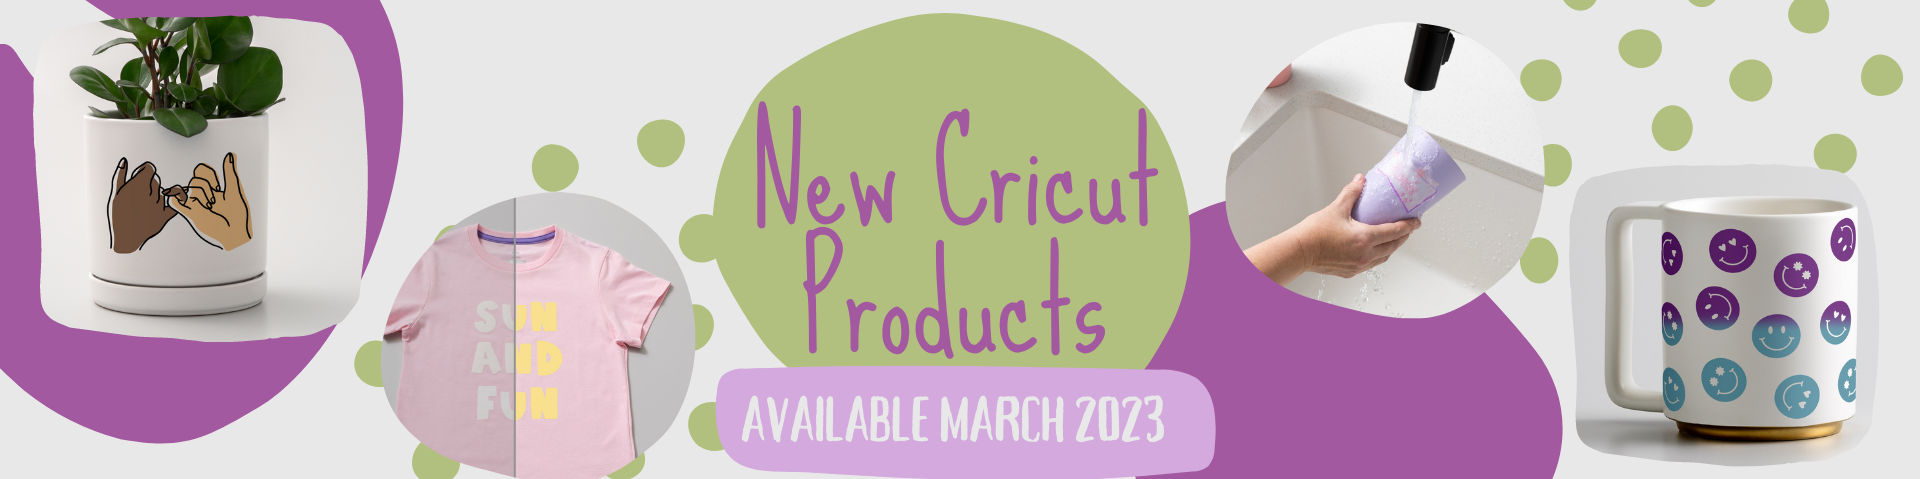 Cricut Color Changing Vinyl Iron On - Dissolvable Smart Label Bundles and More!